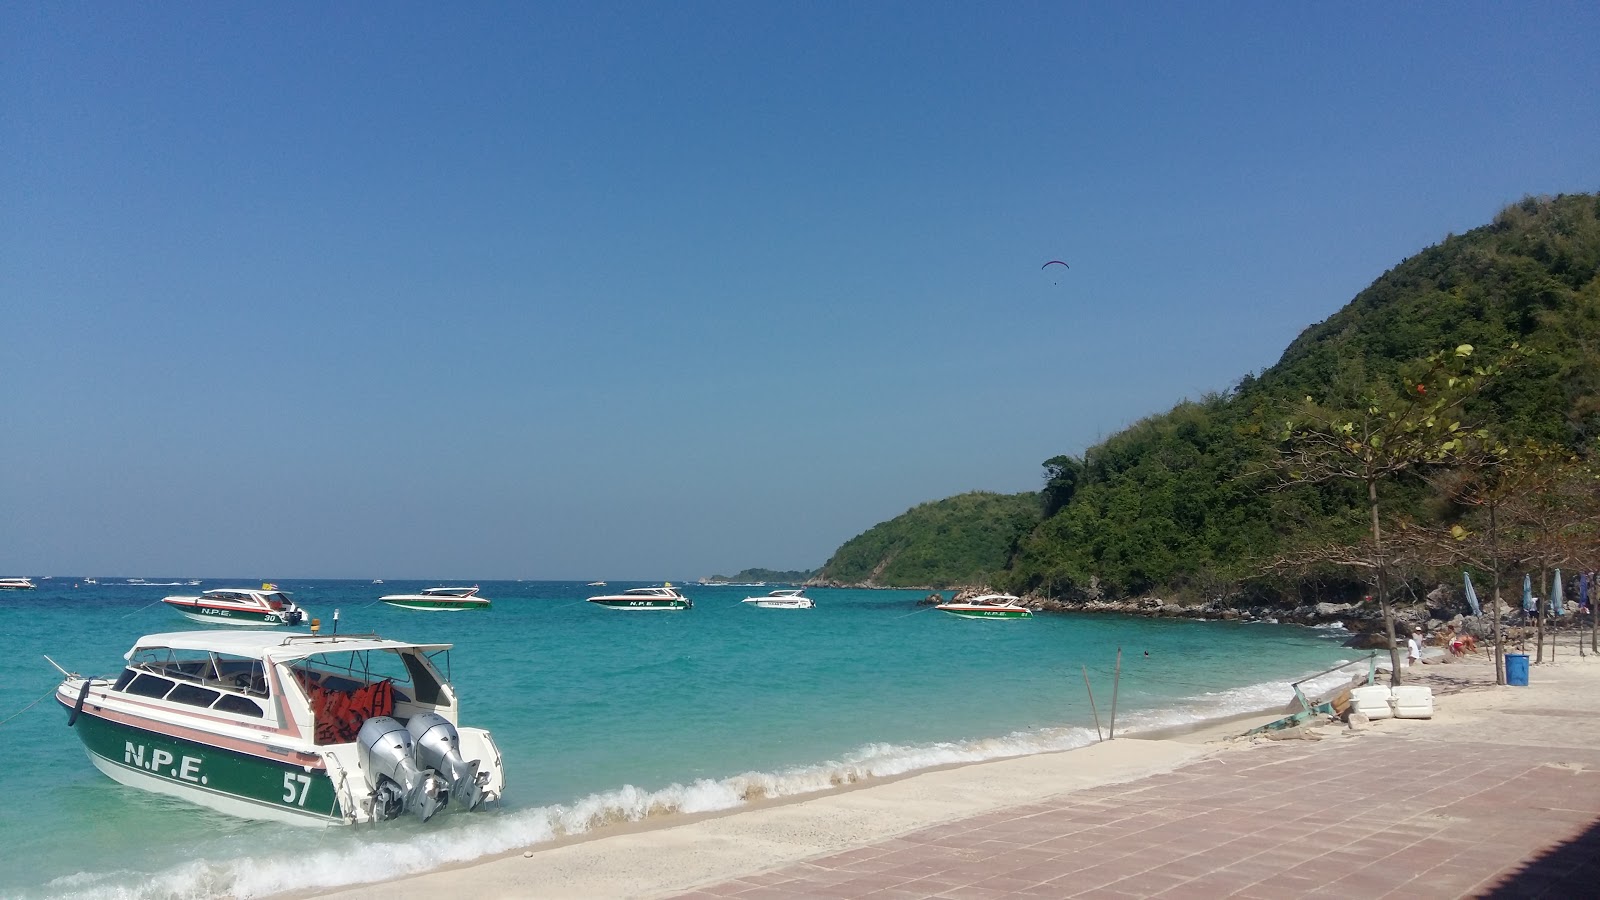 Foto af Tong Lang Beach - populært sted blandt afslapningskendere